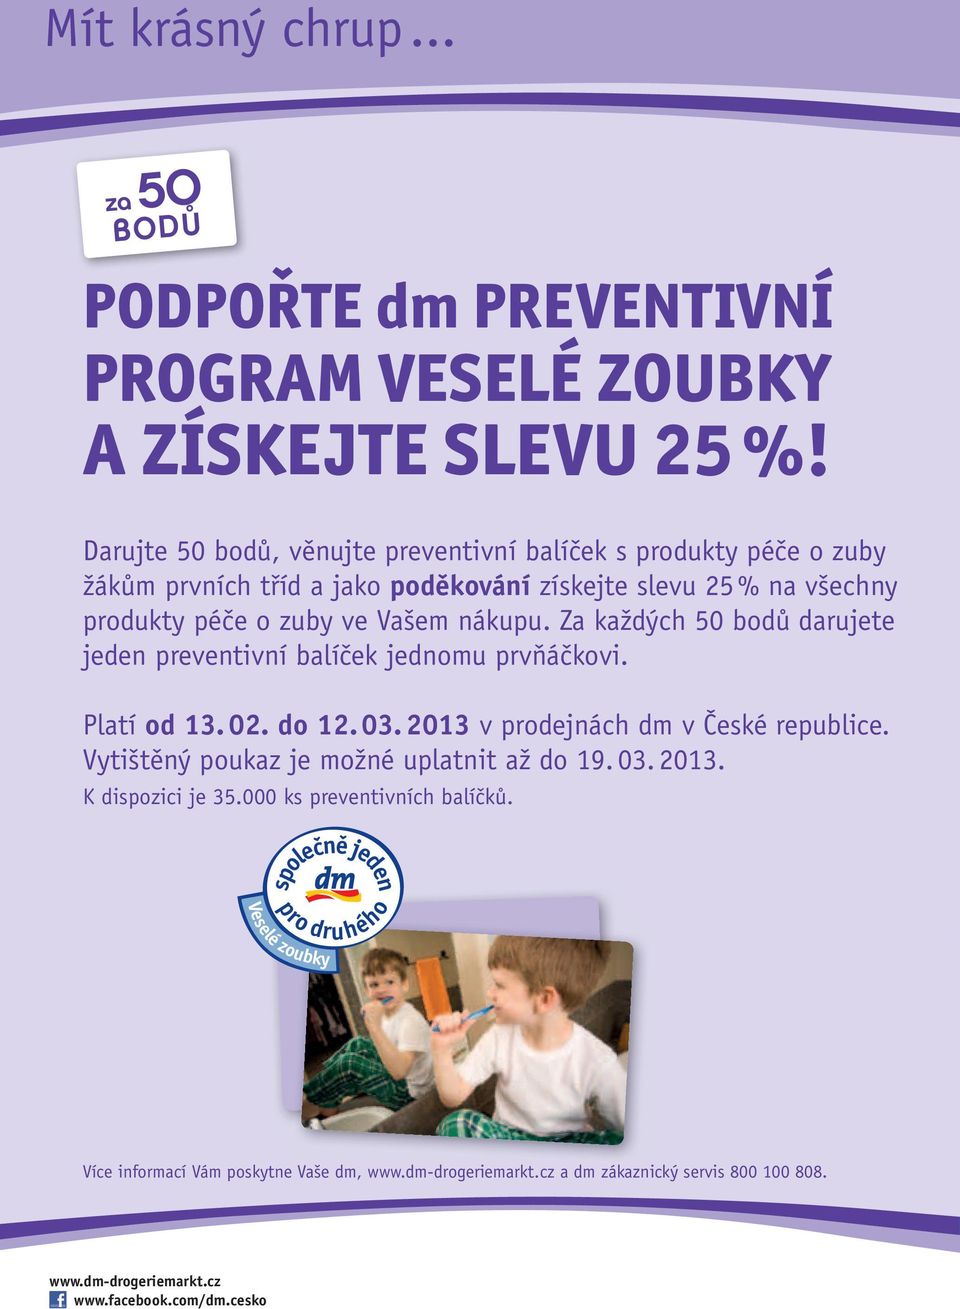 Za každých 50 bodů darujete jeden preventivní balíček jednomu prvňáčkovi. Platí od 13. 02. do 12. 03. 2013 v prodejnách dm v České republice.